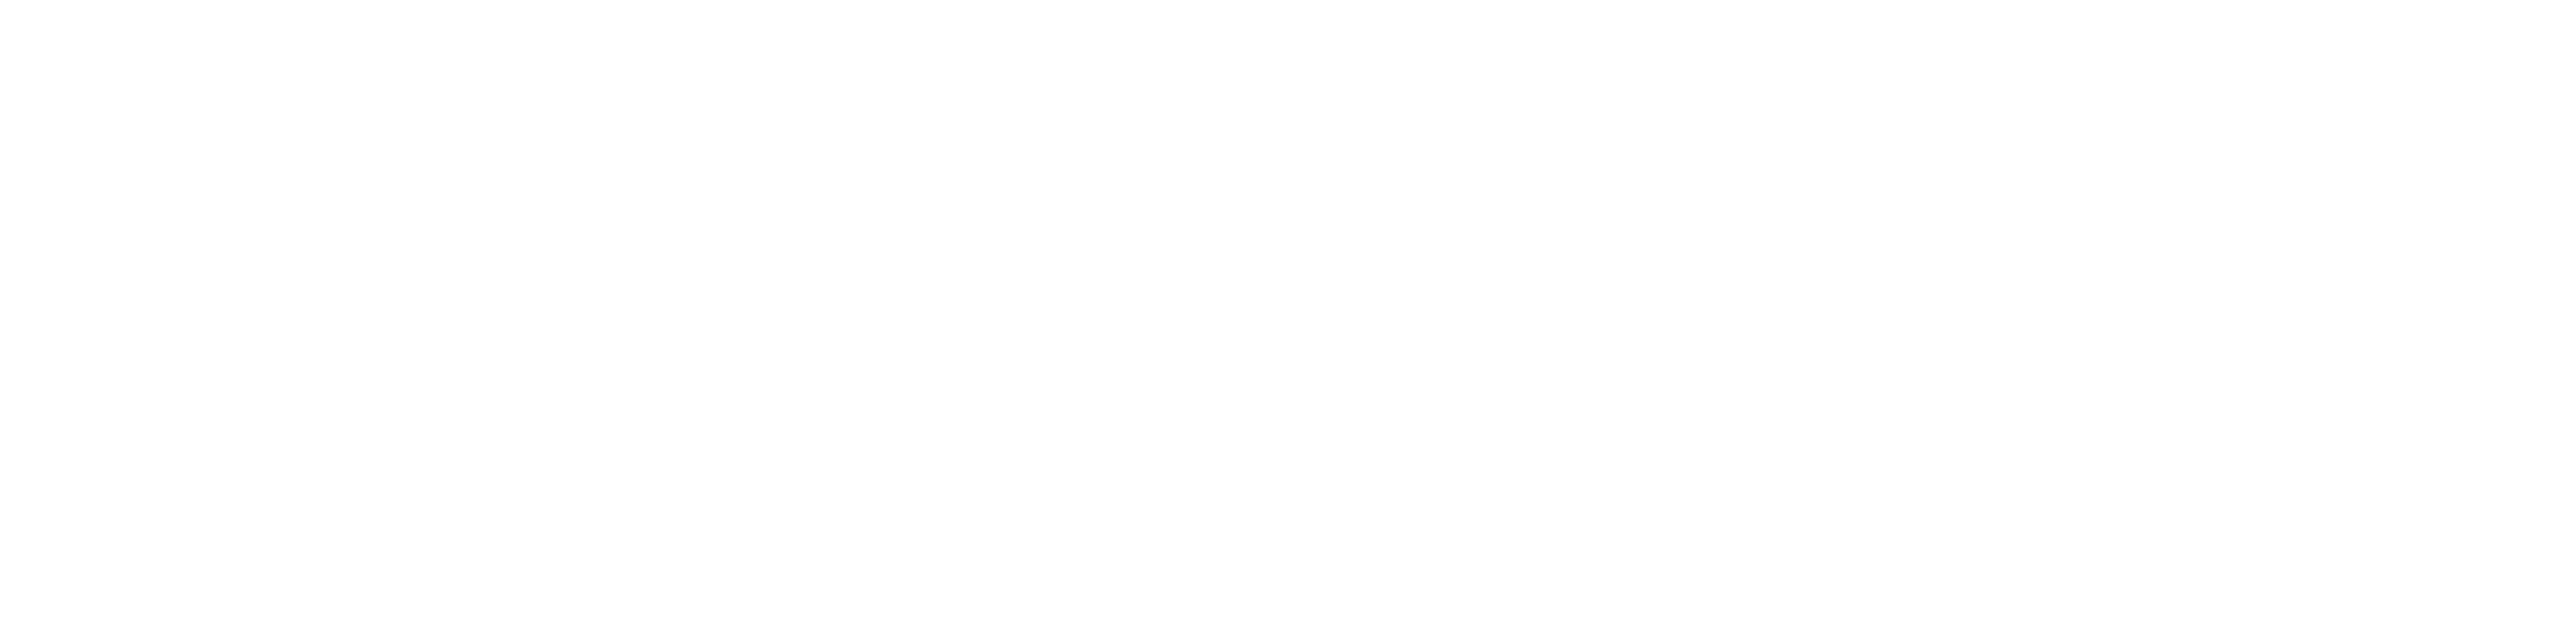 Logo website white (transp)